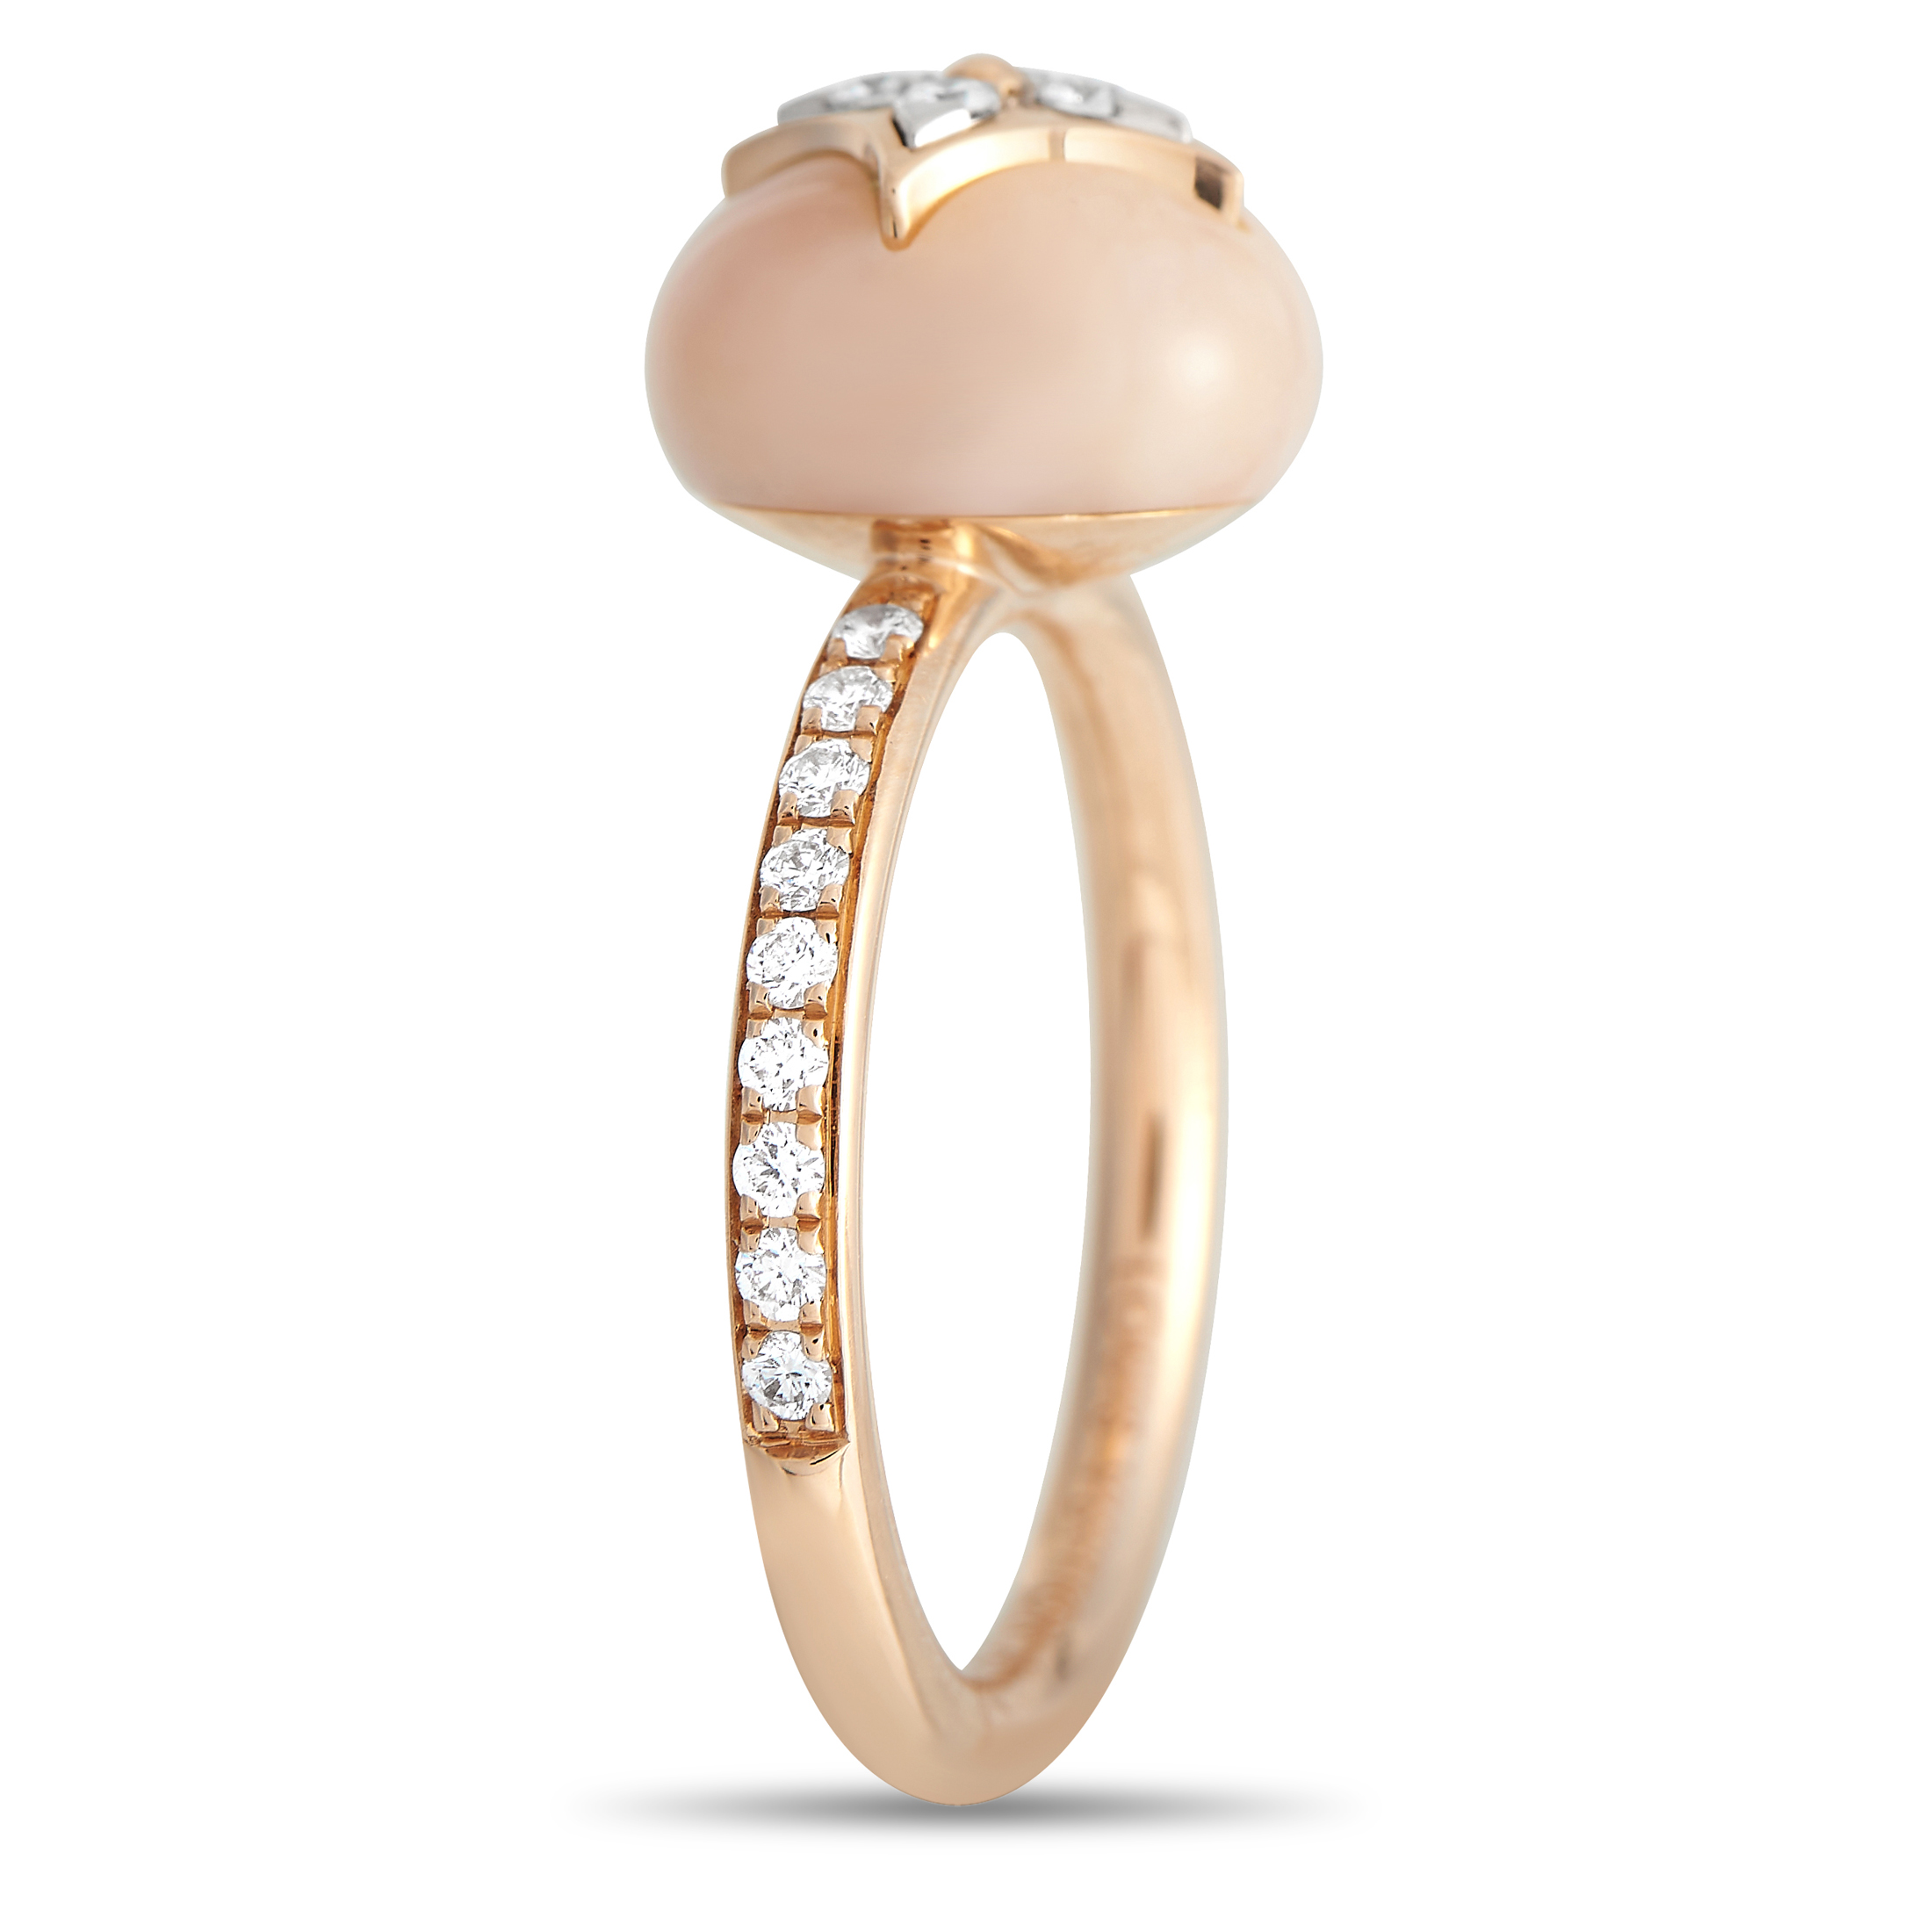 Louis Vuitton Empreinte Ring, White Gold and Diamonds Grey. Size 53